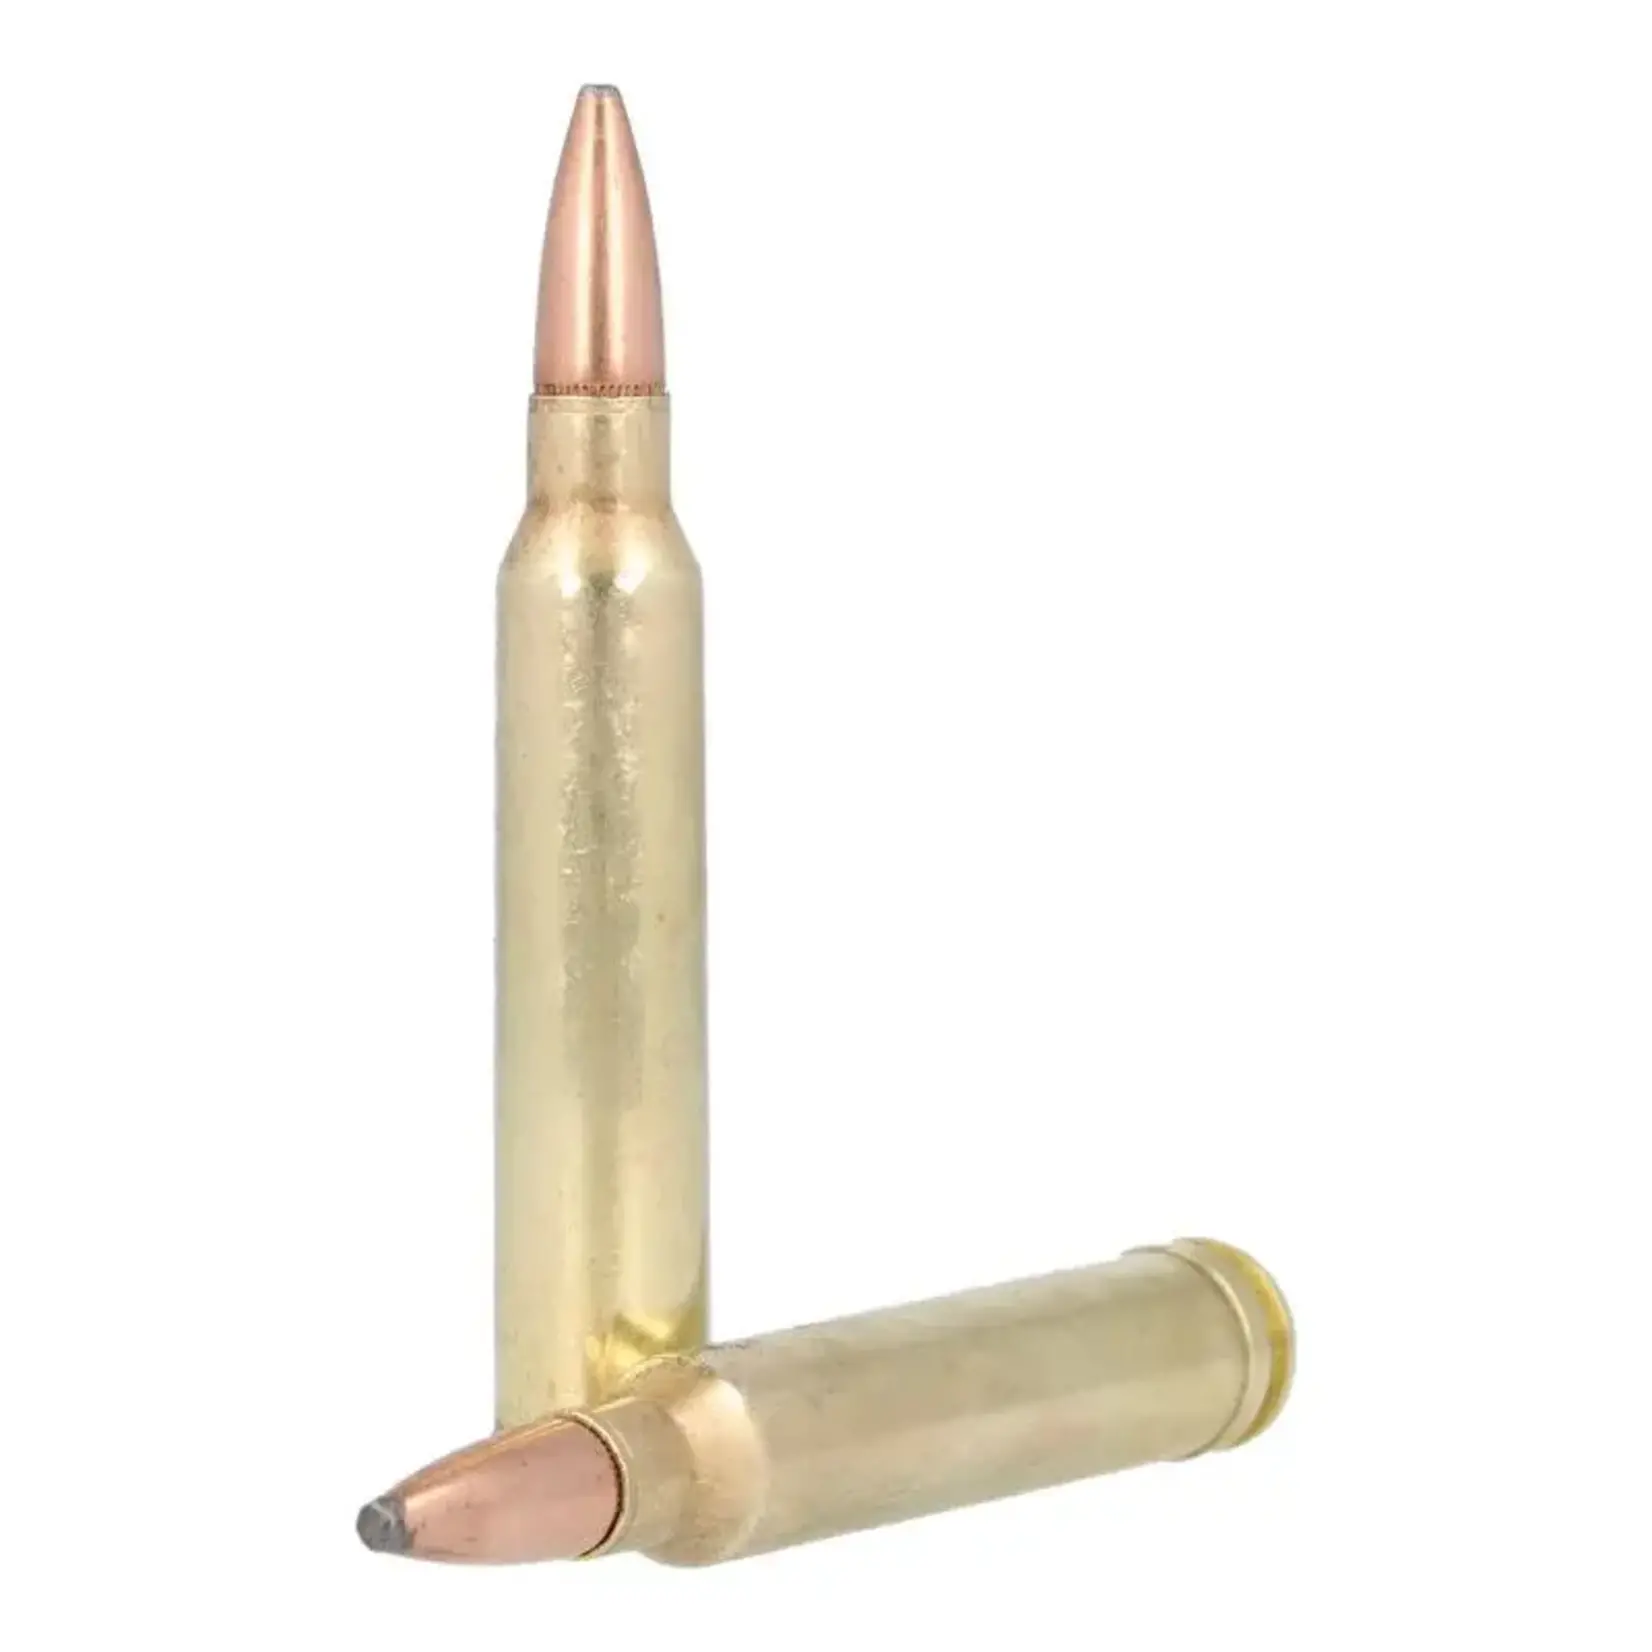 REMINGTON Munitions Remington Core-Lokt Cal.300 Win Mag 180Gr Psp